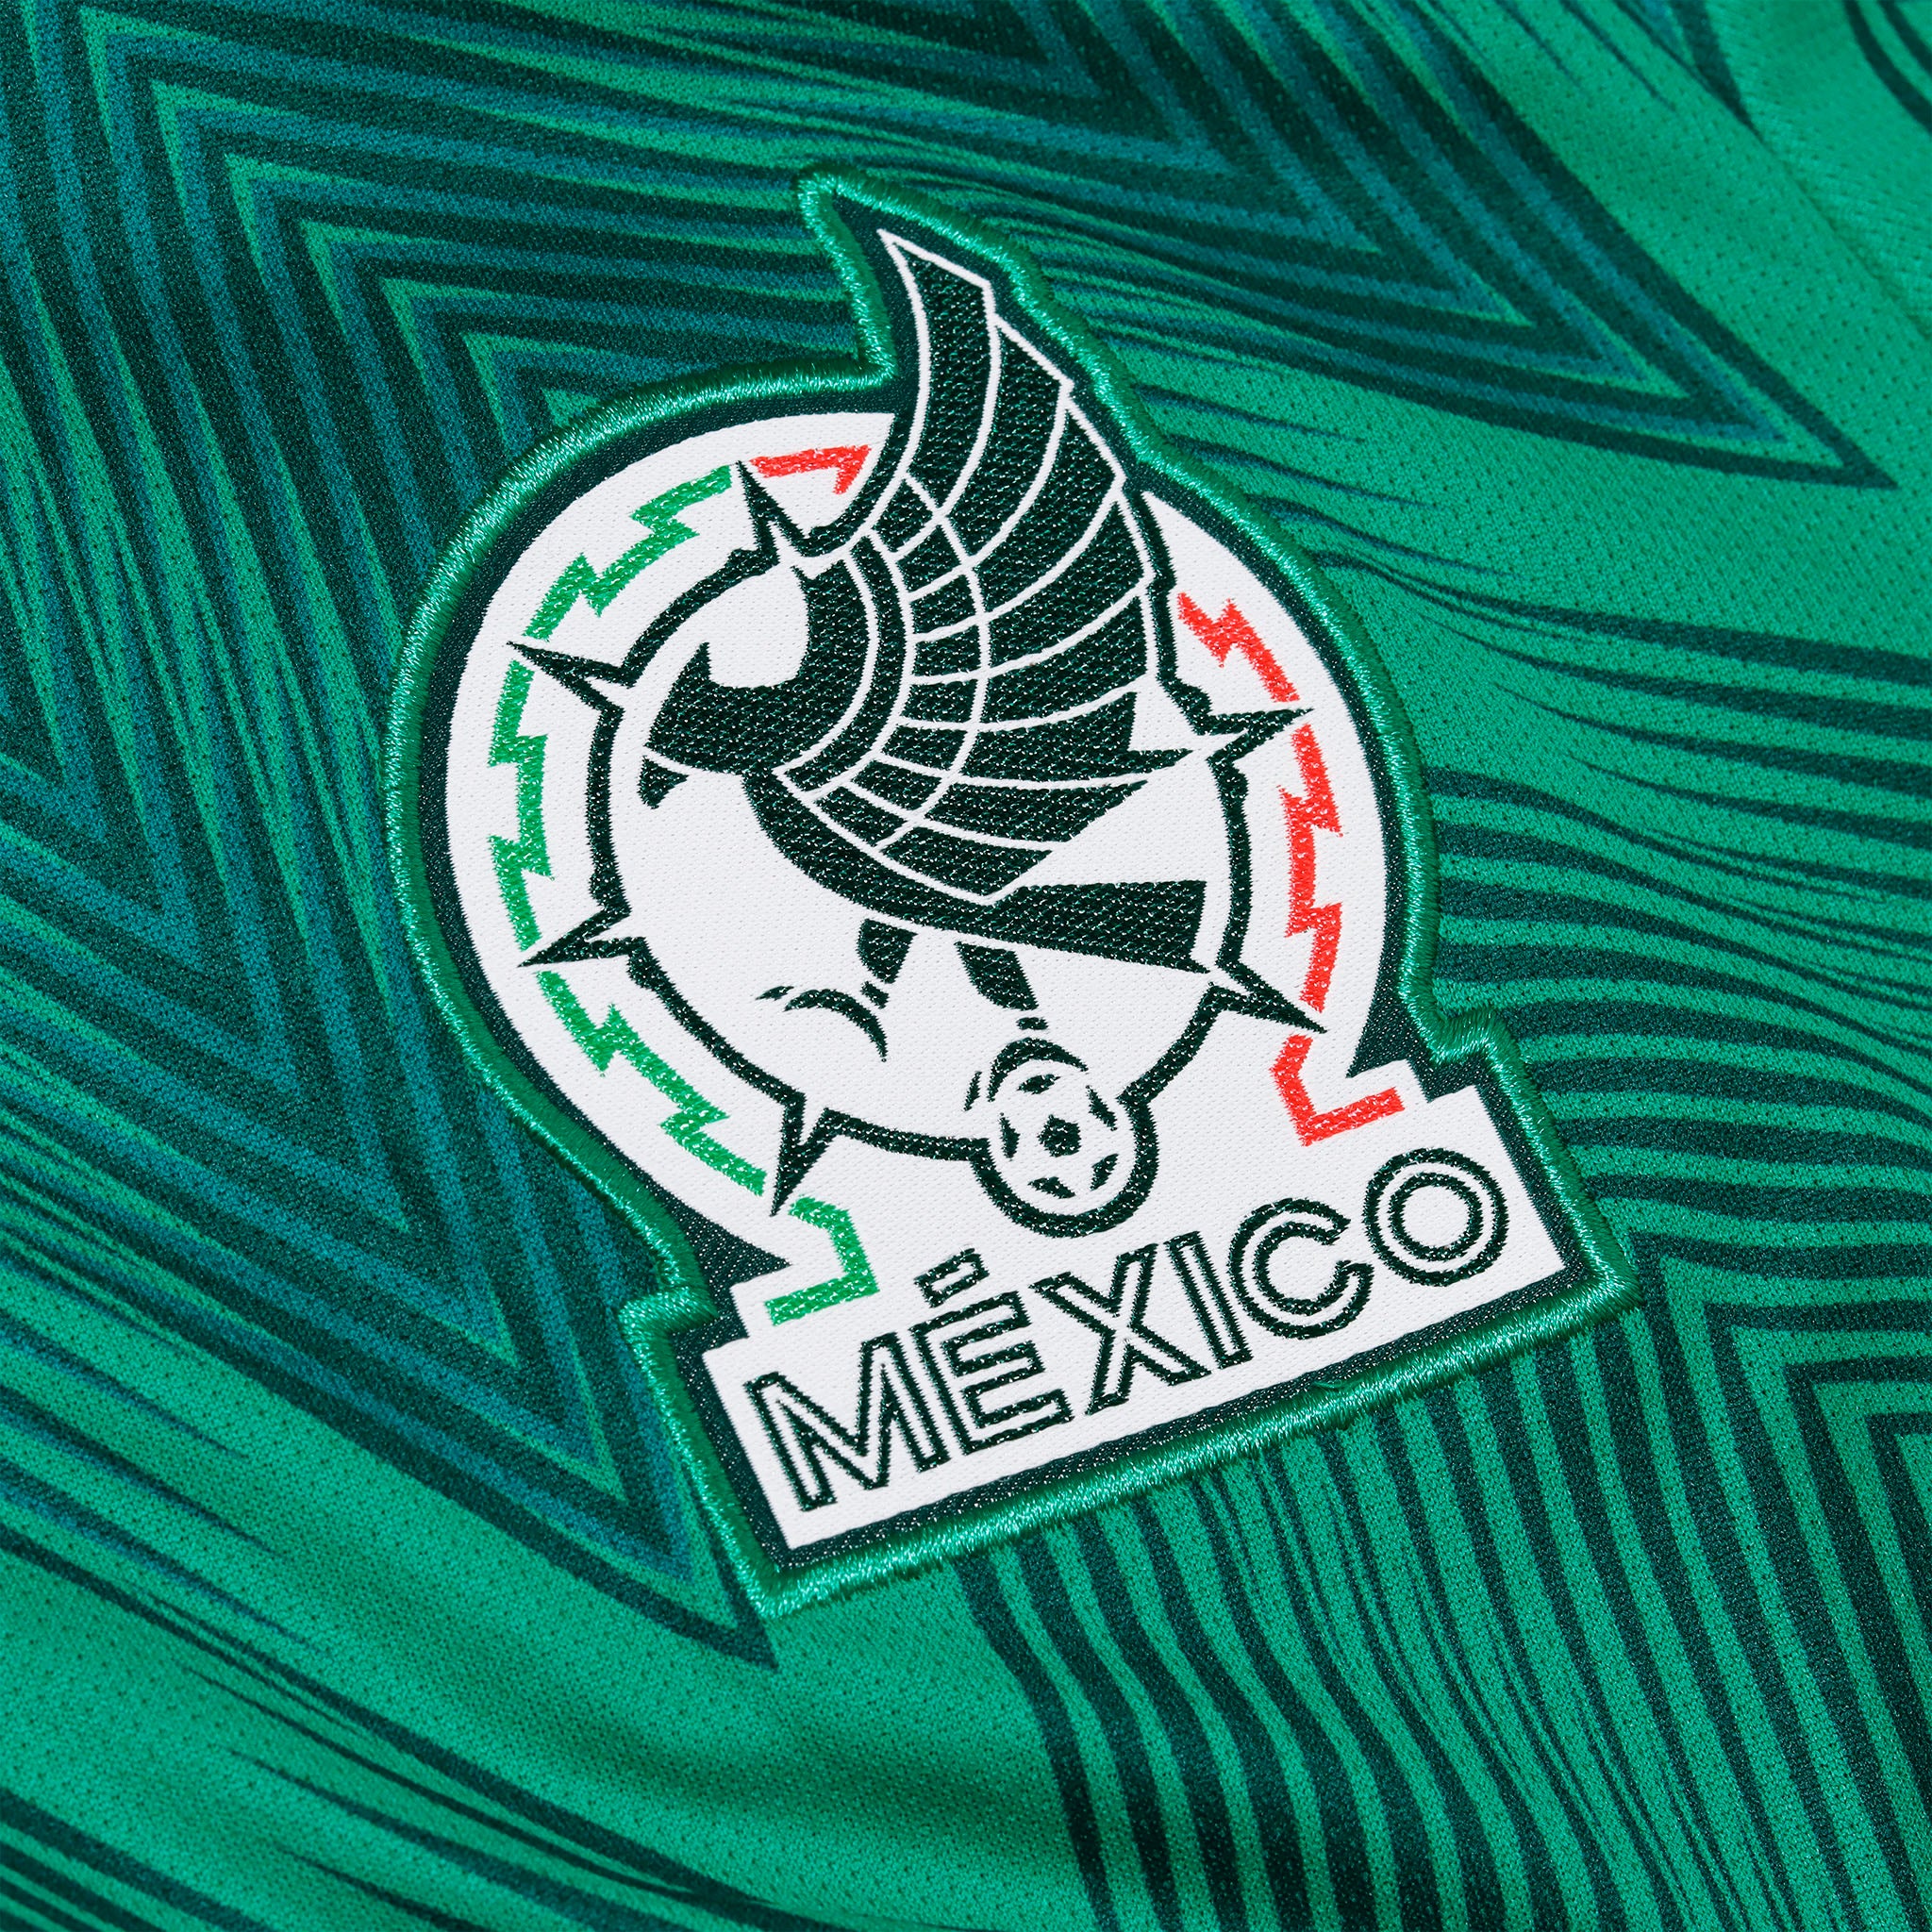 Jersey Adidas Selección Mexicana